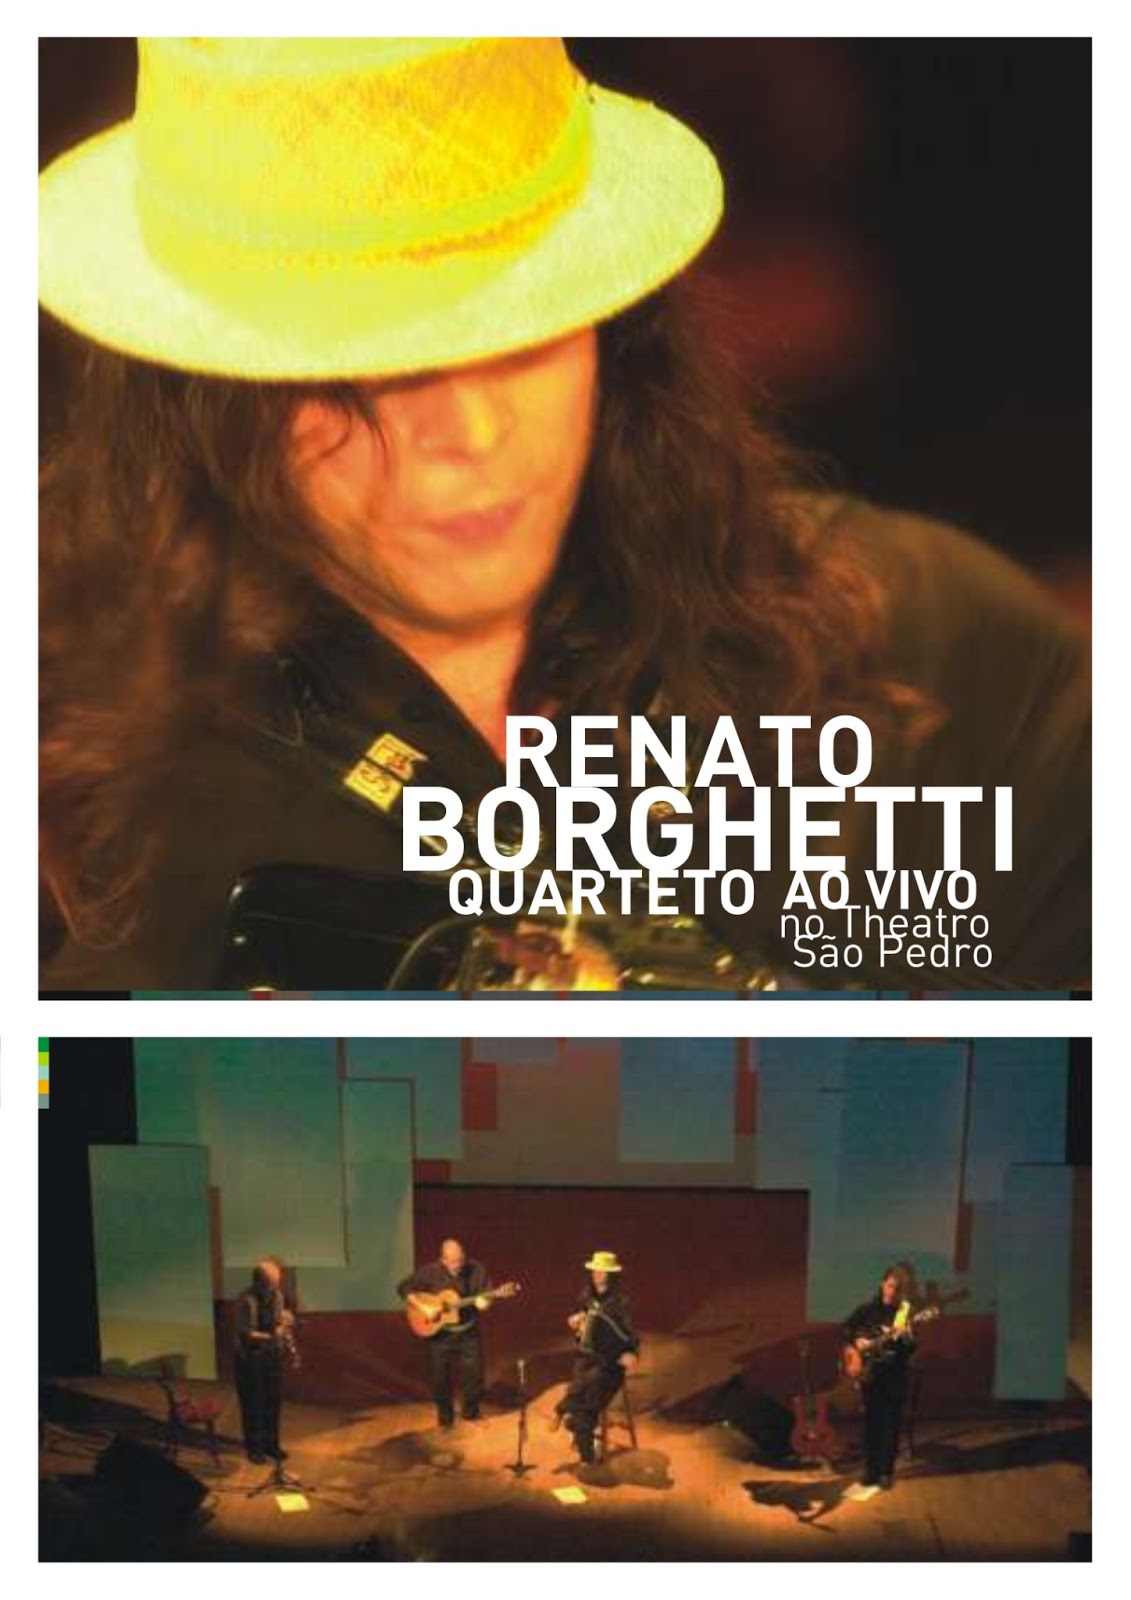 DVD Renato Borghetti Quarteto ao Vivo no Theatro São Pedro - Porto Alegre - RS